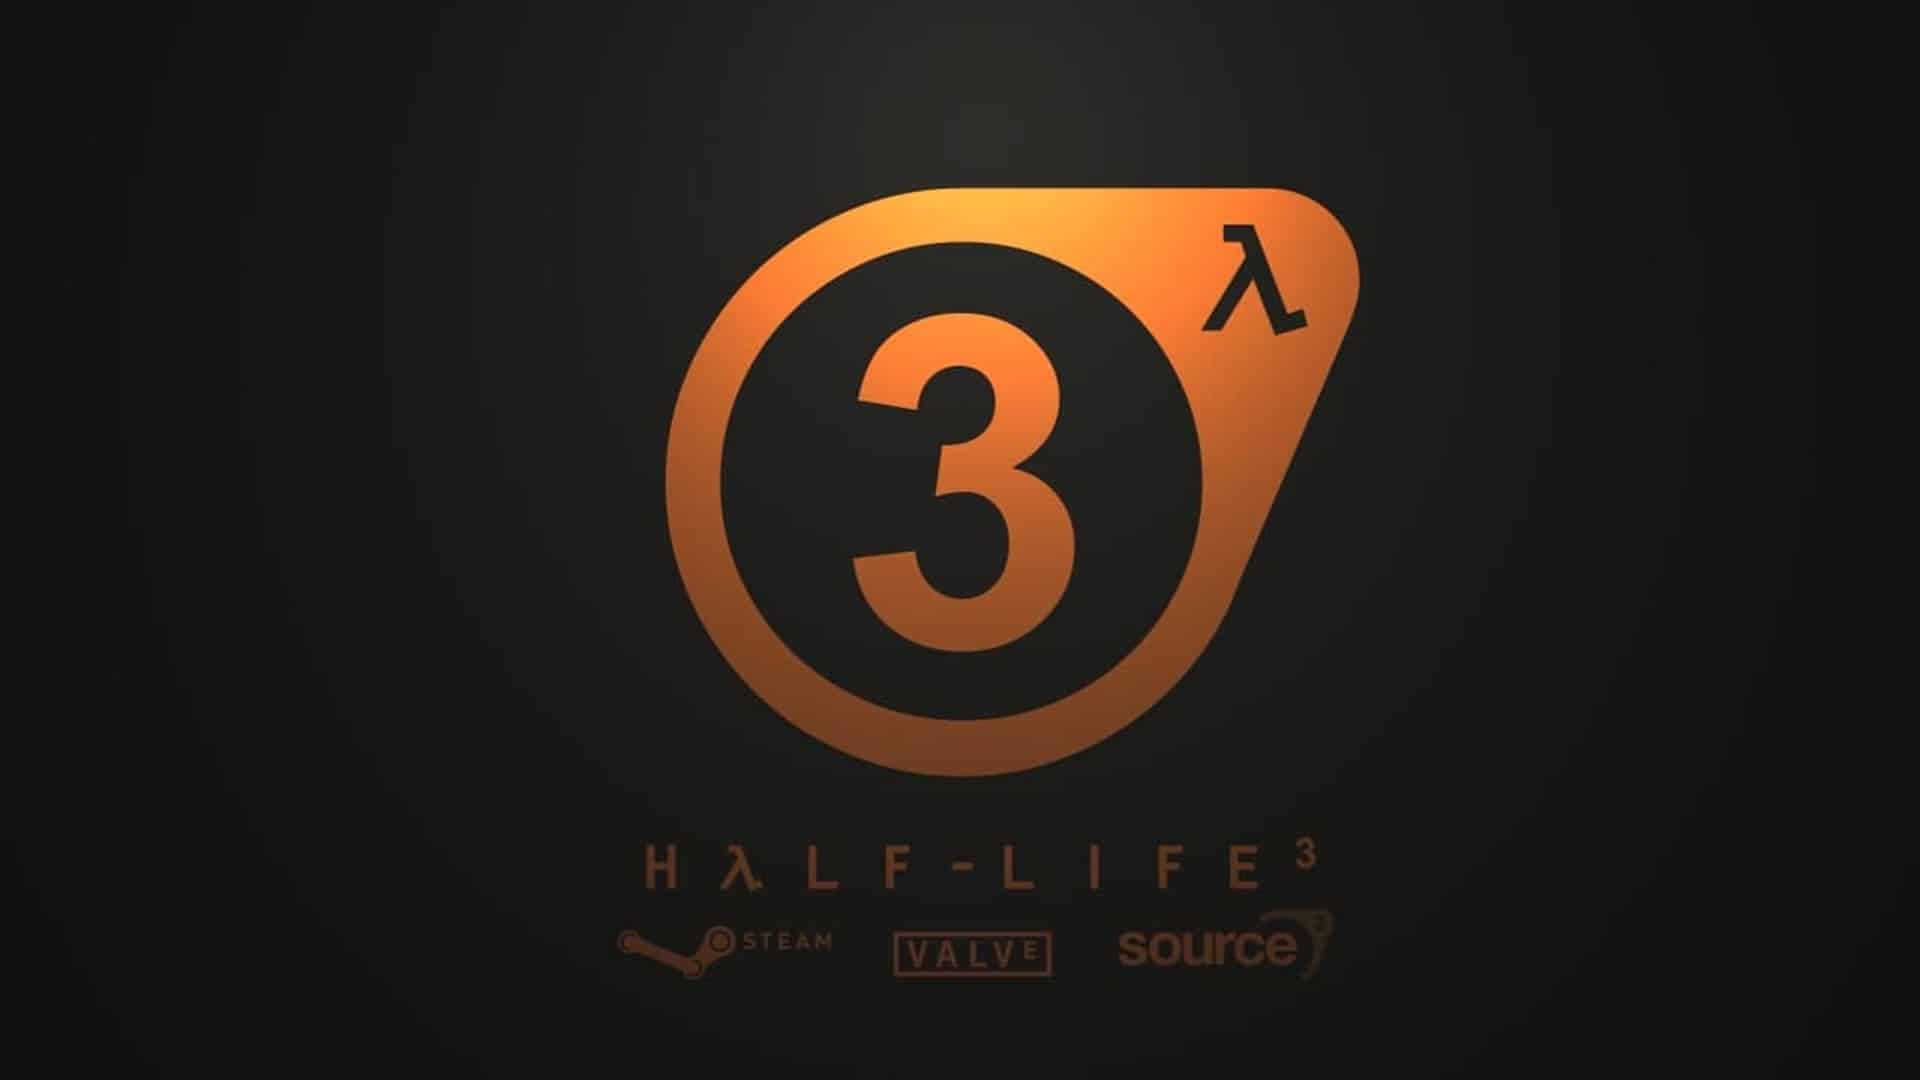 Half-Life 3 no está en desarrollo, pero Valve tiene otros proyectos de Half-Life en curso, según rumor, GamersRD